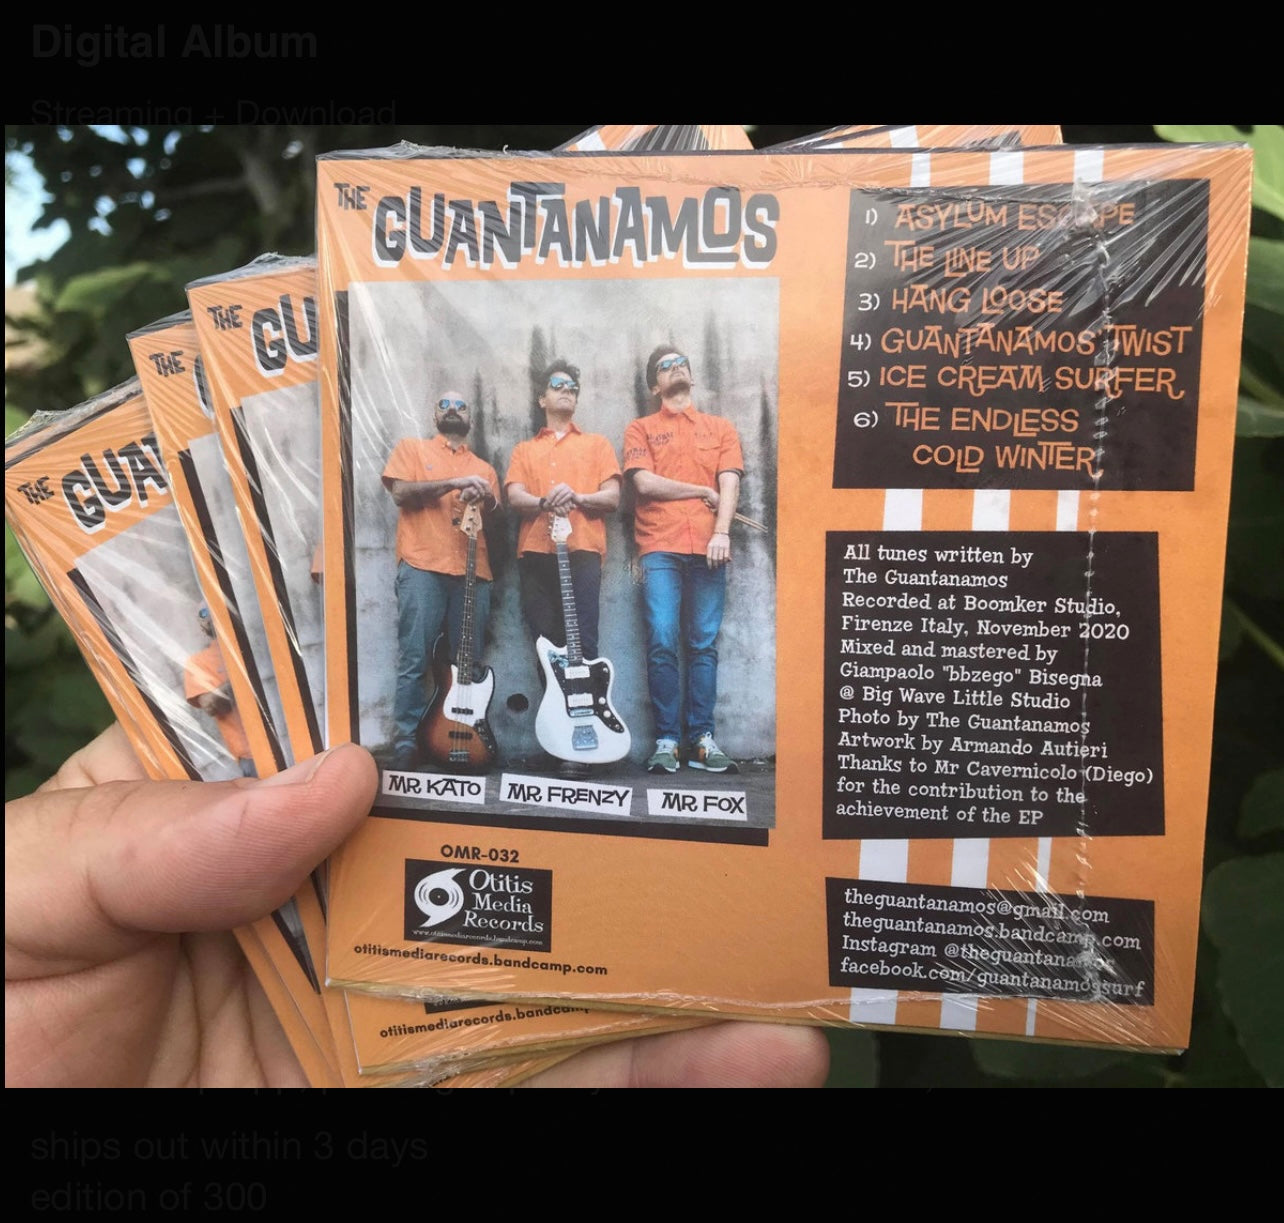 OMR-032 THE GUANTANAMOS “Asylum Escape” CD/EP